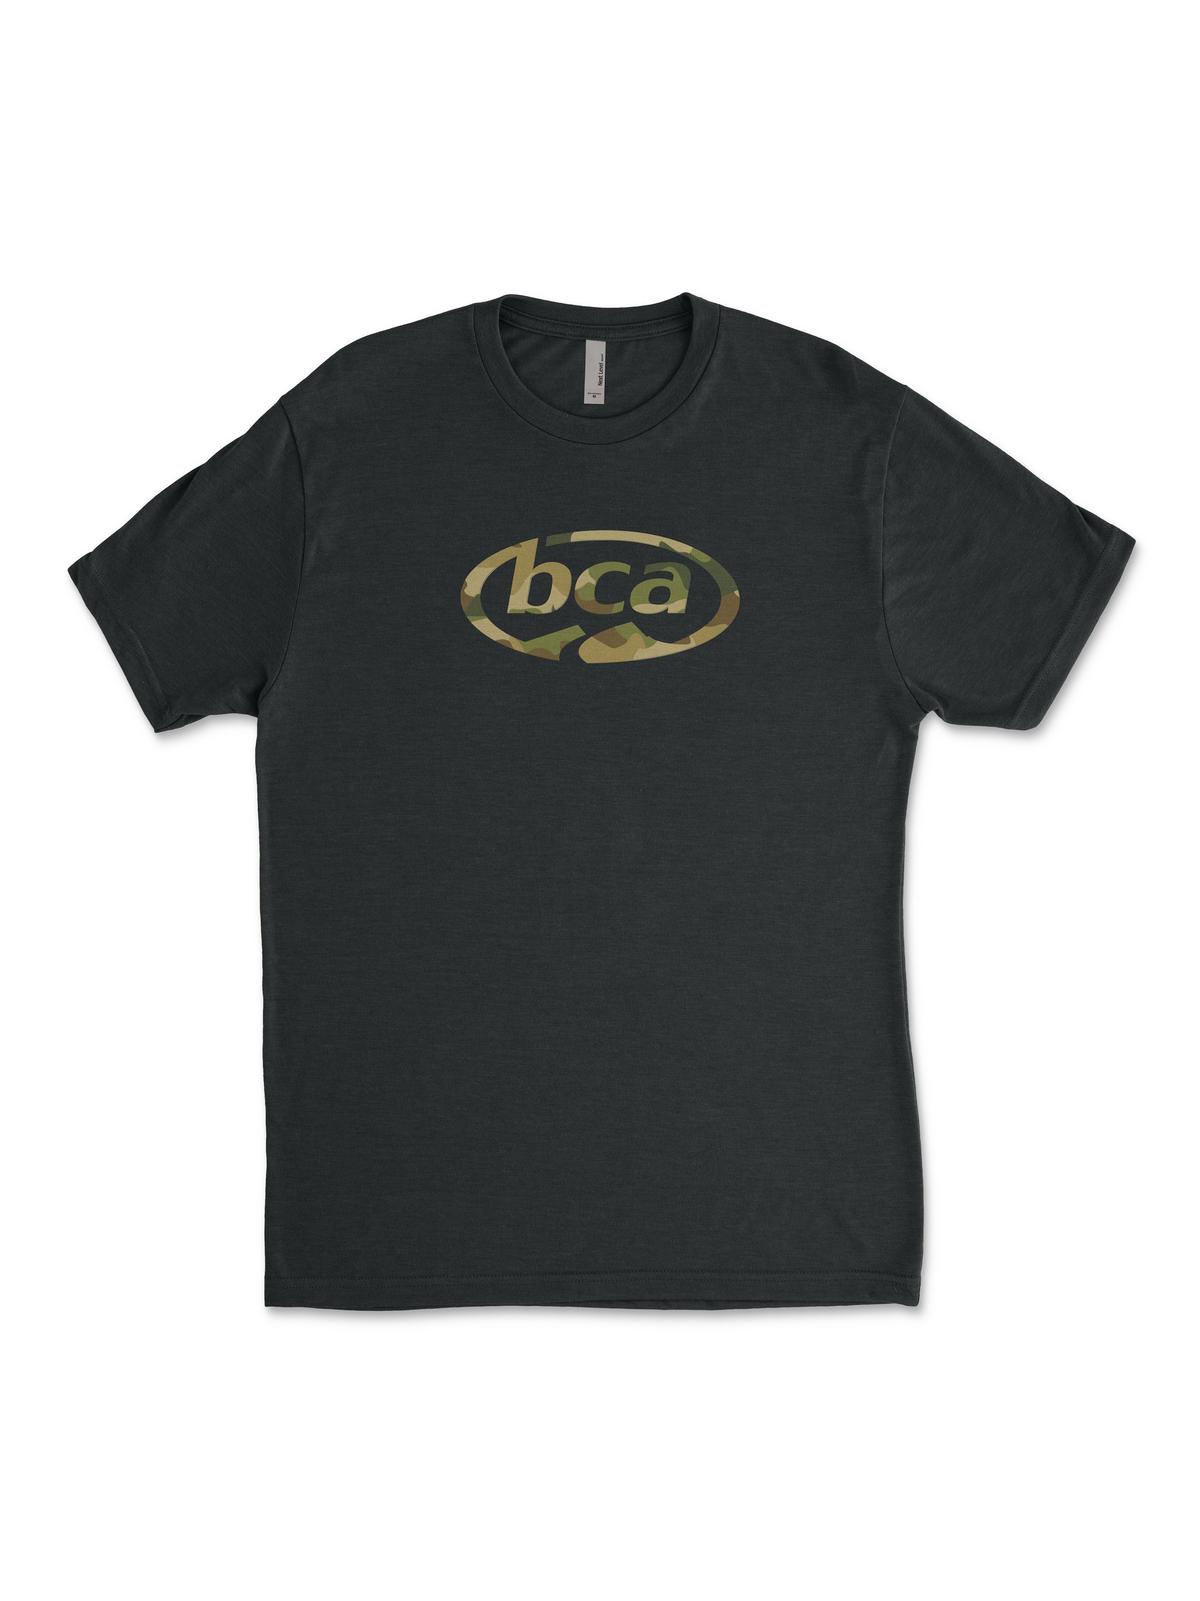 BCA Camo Logo T-Shirt Backcountry Access